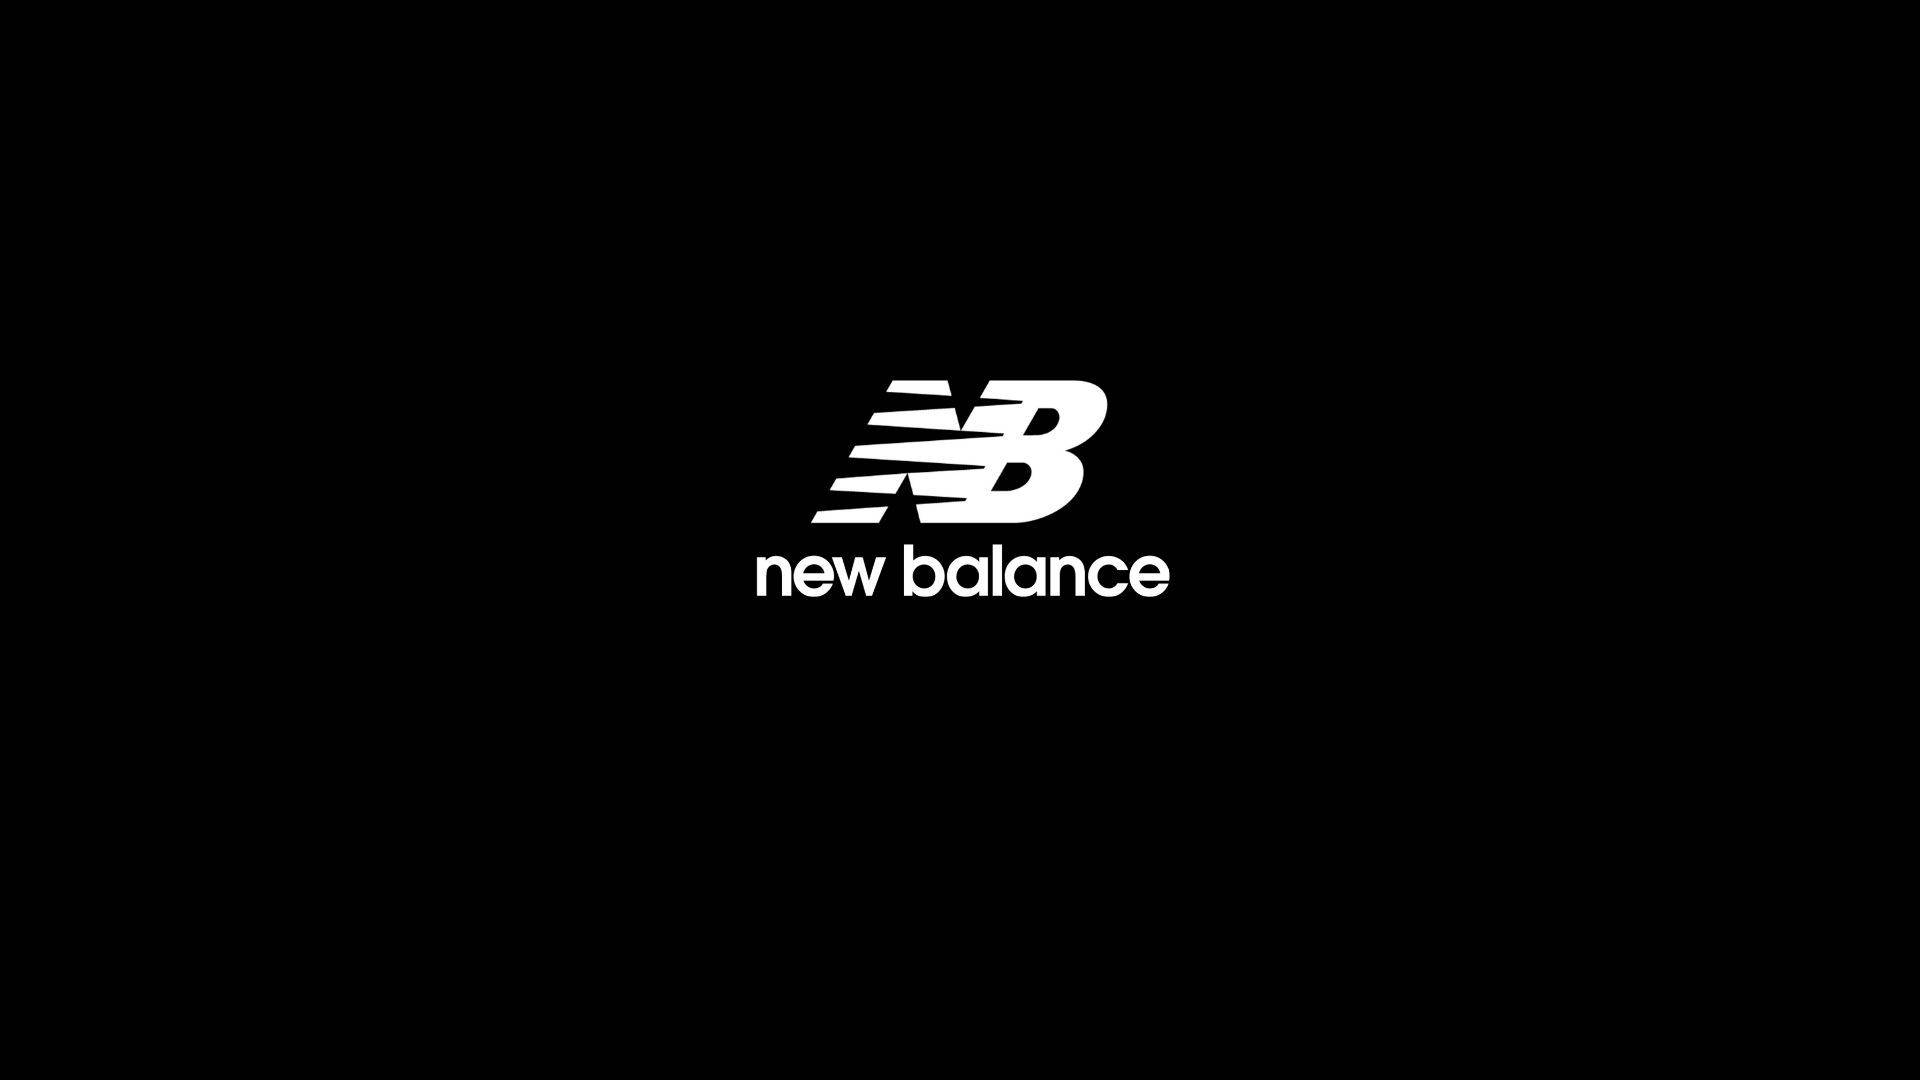 New Balance Background Photos